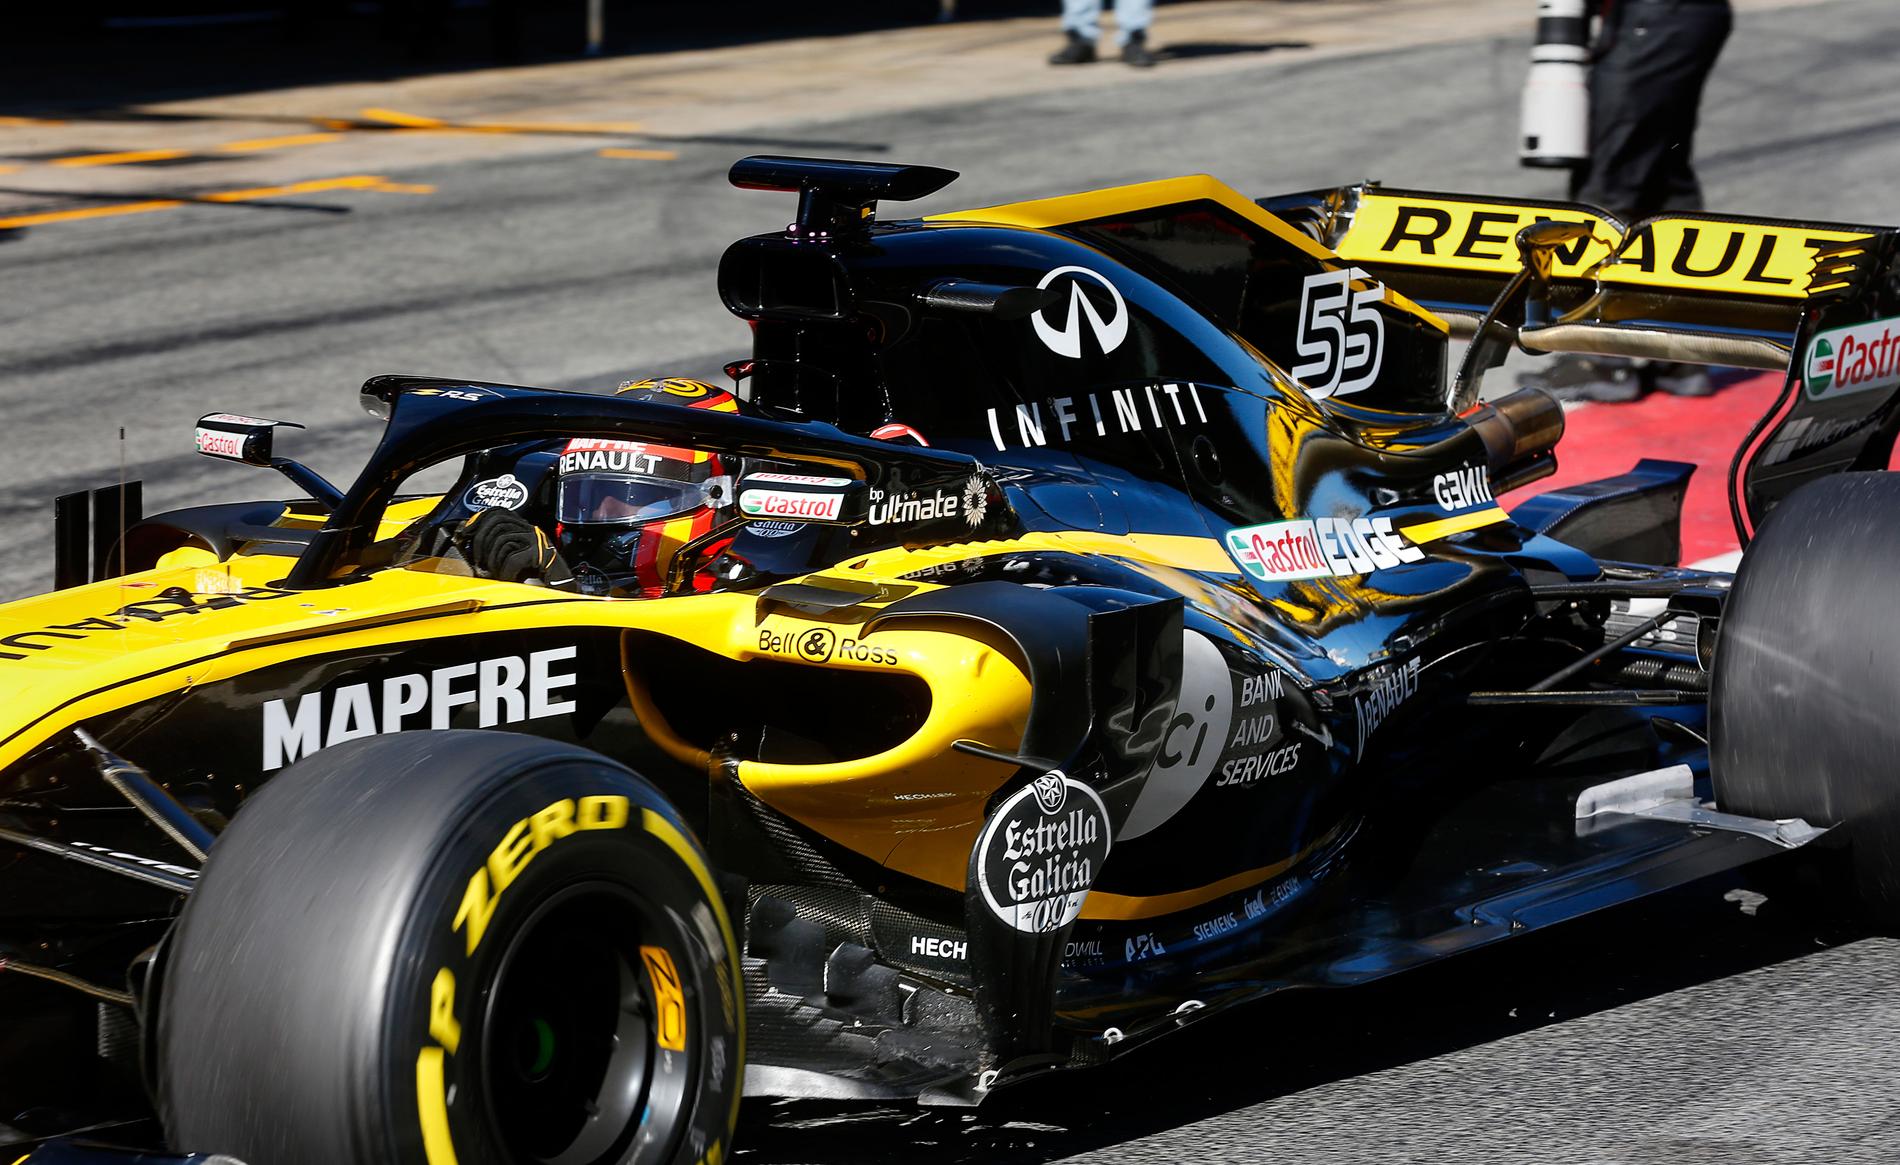 Carlos Sainz körde 91 varv med sin Renault. Teamet förväntas ta stora steg framåt i år. Hans teamkollega Nico Hülkenberg hade däremot problem med en sensor och körde bara 48.